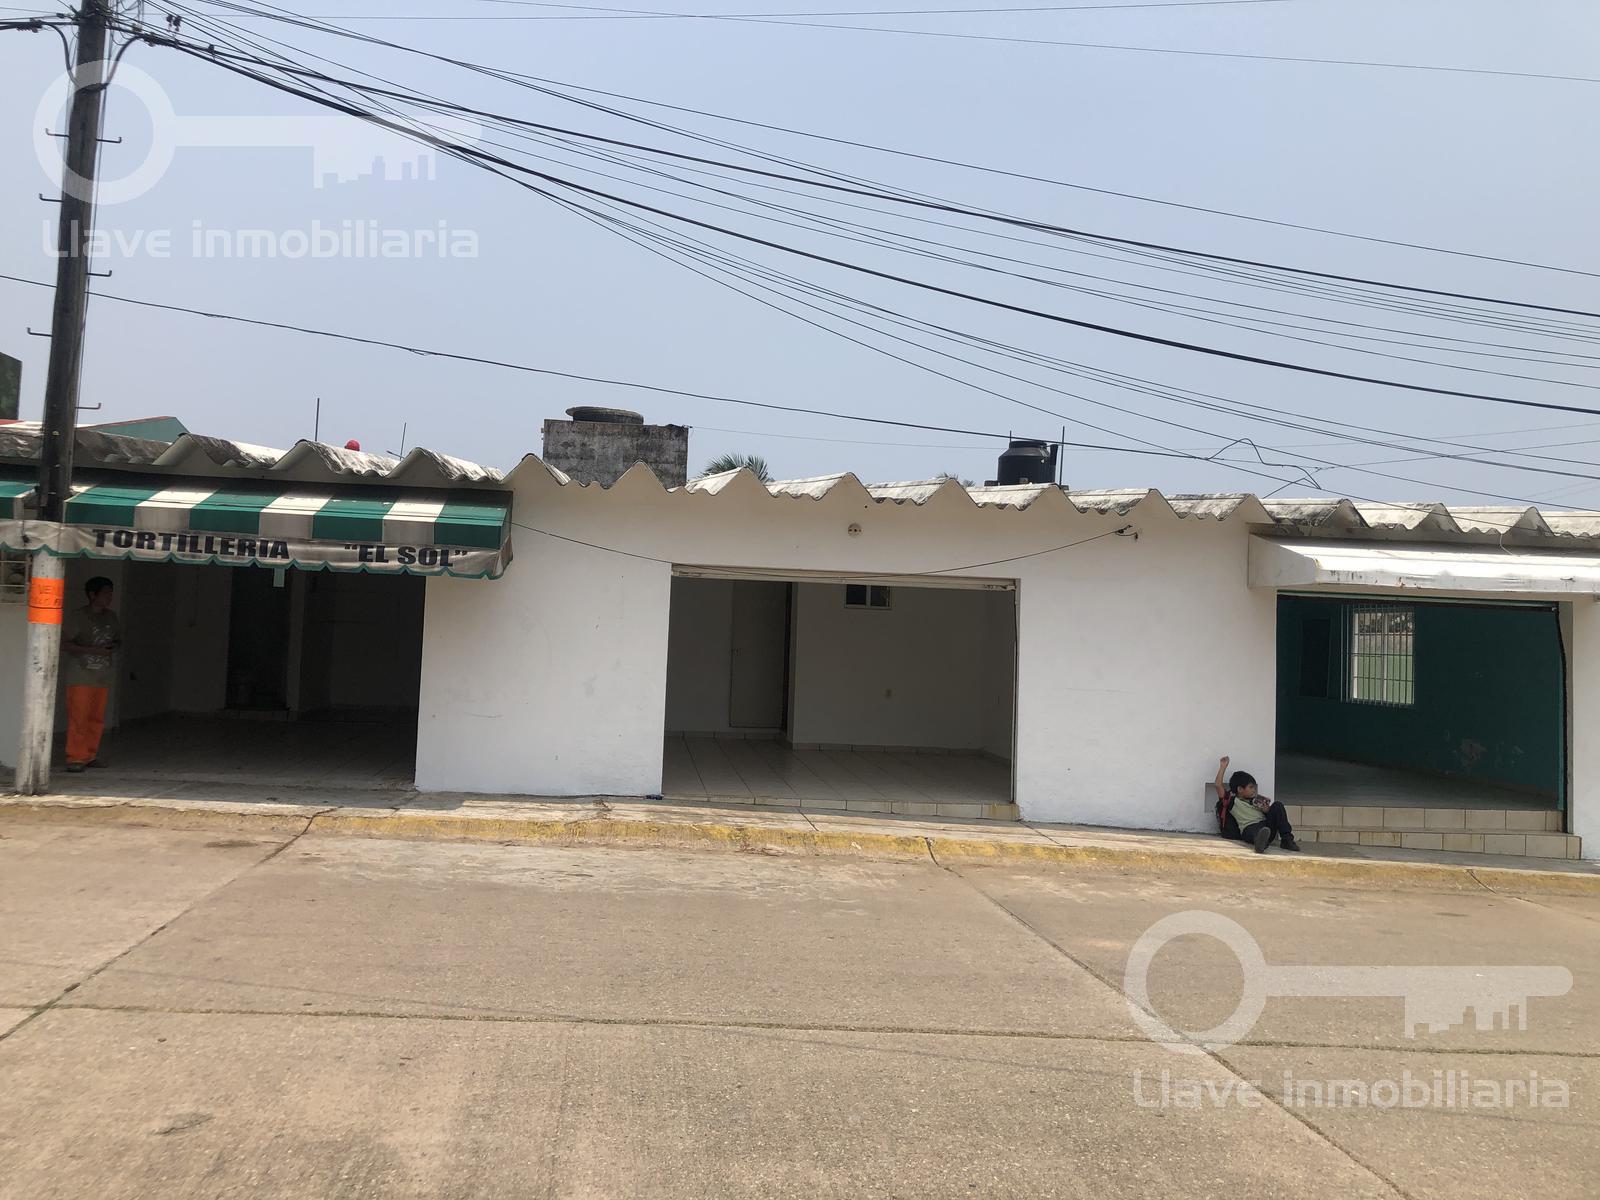 Renta de Locales Comerciales de 79.5 m2 en esquina de Av. Flamboyanes, Zona 7, Col. Rabón Grande, Villa Allende, Veracruz.